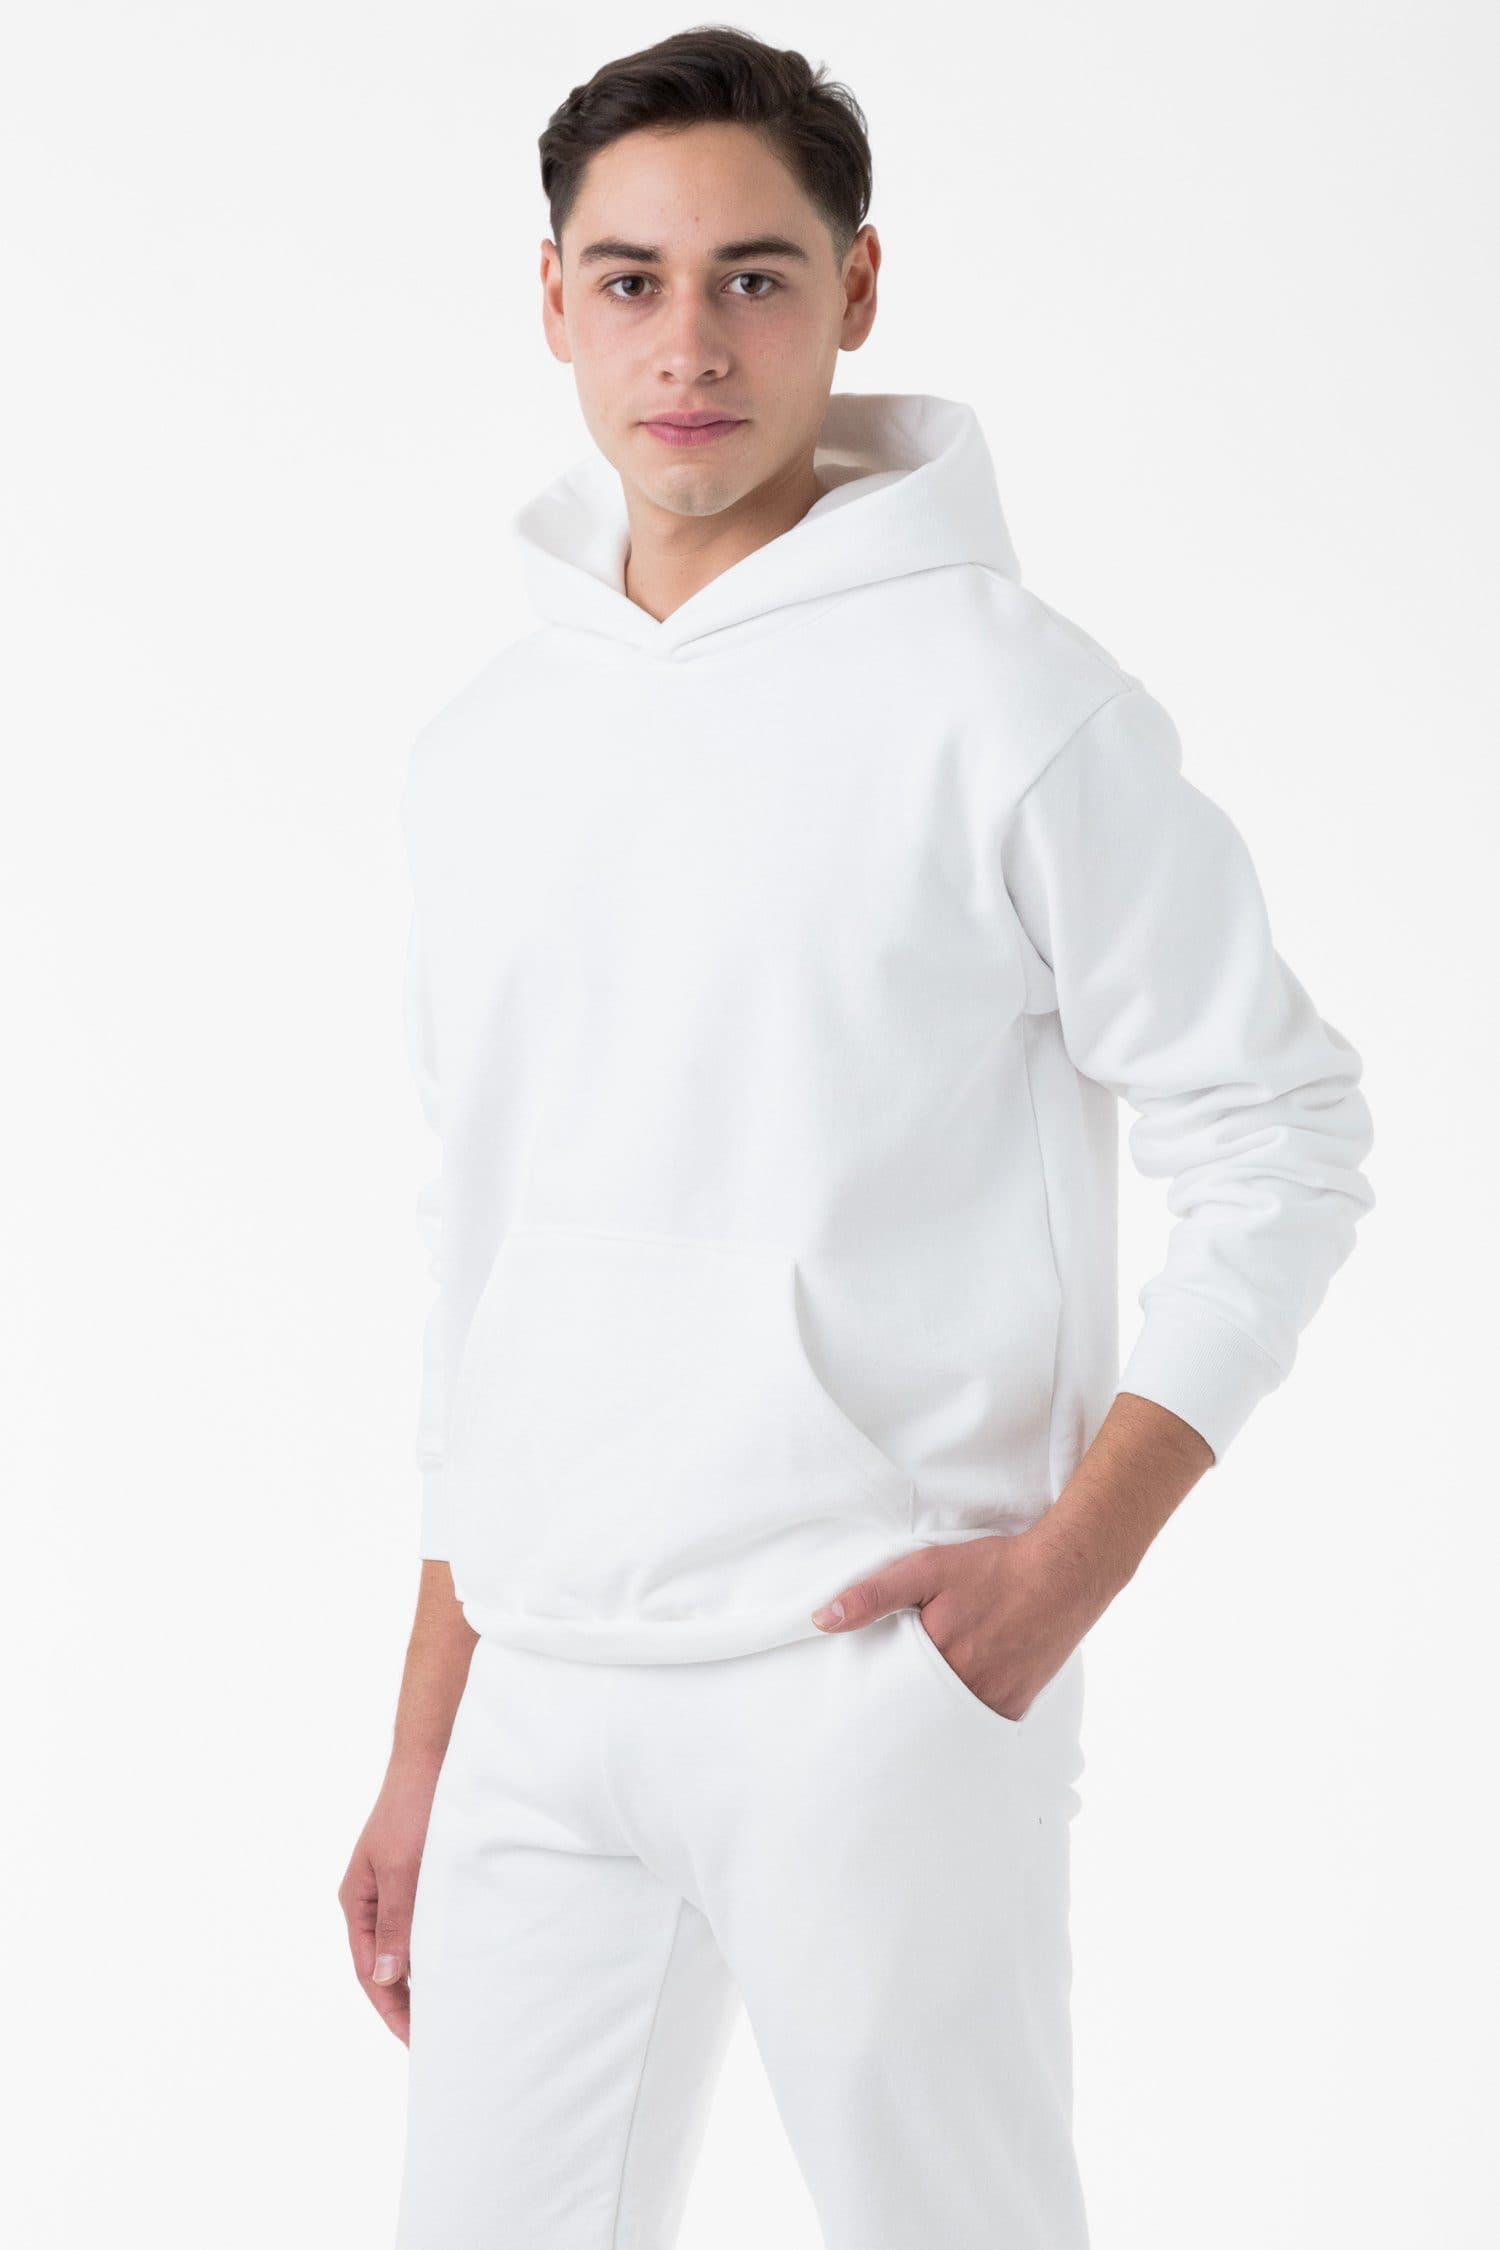 Supreme Hoodies for Men for Sale, Shop Men's Athletic Clothes